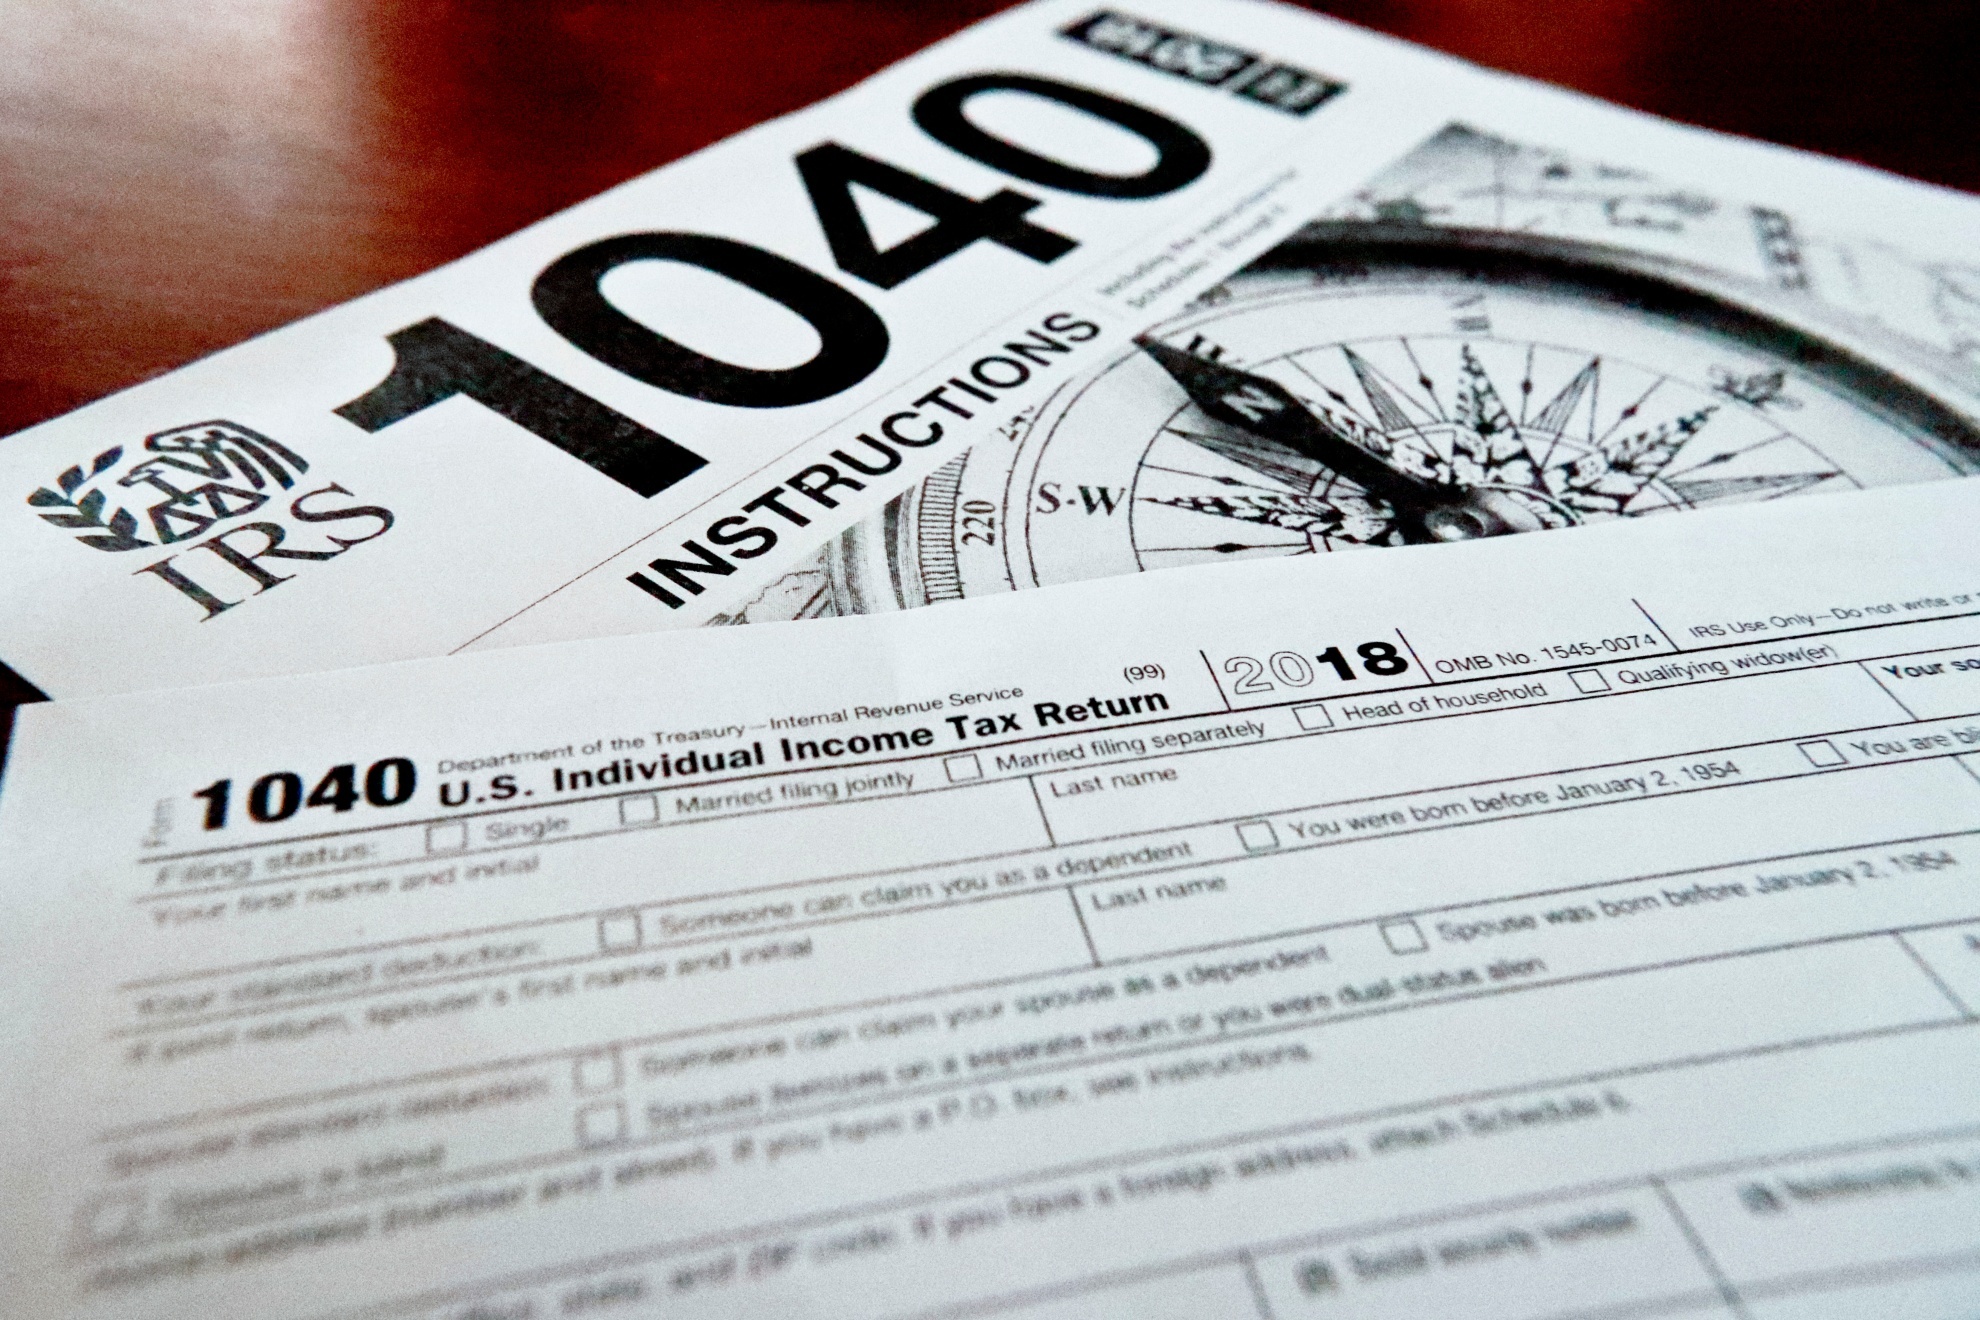 1040 tax return form